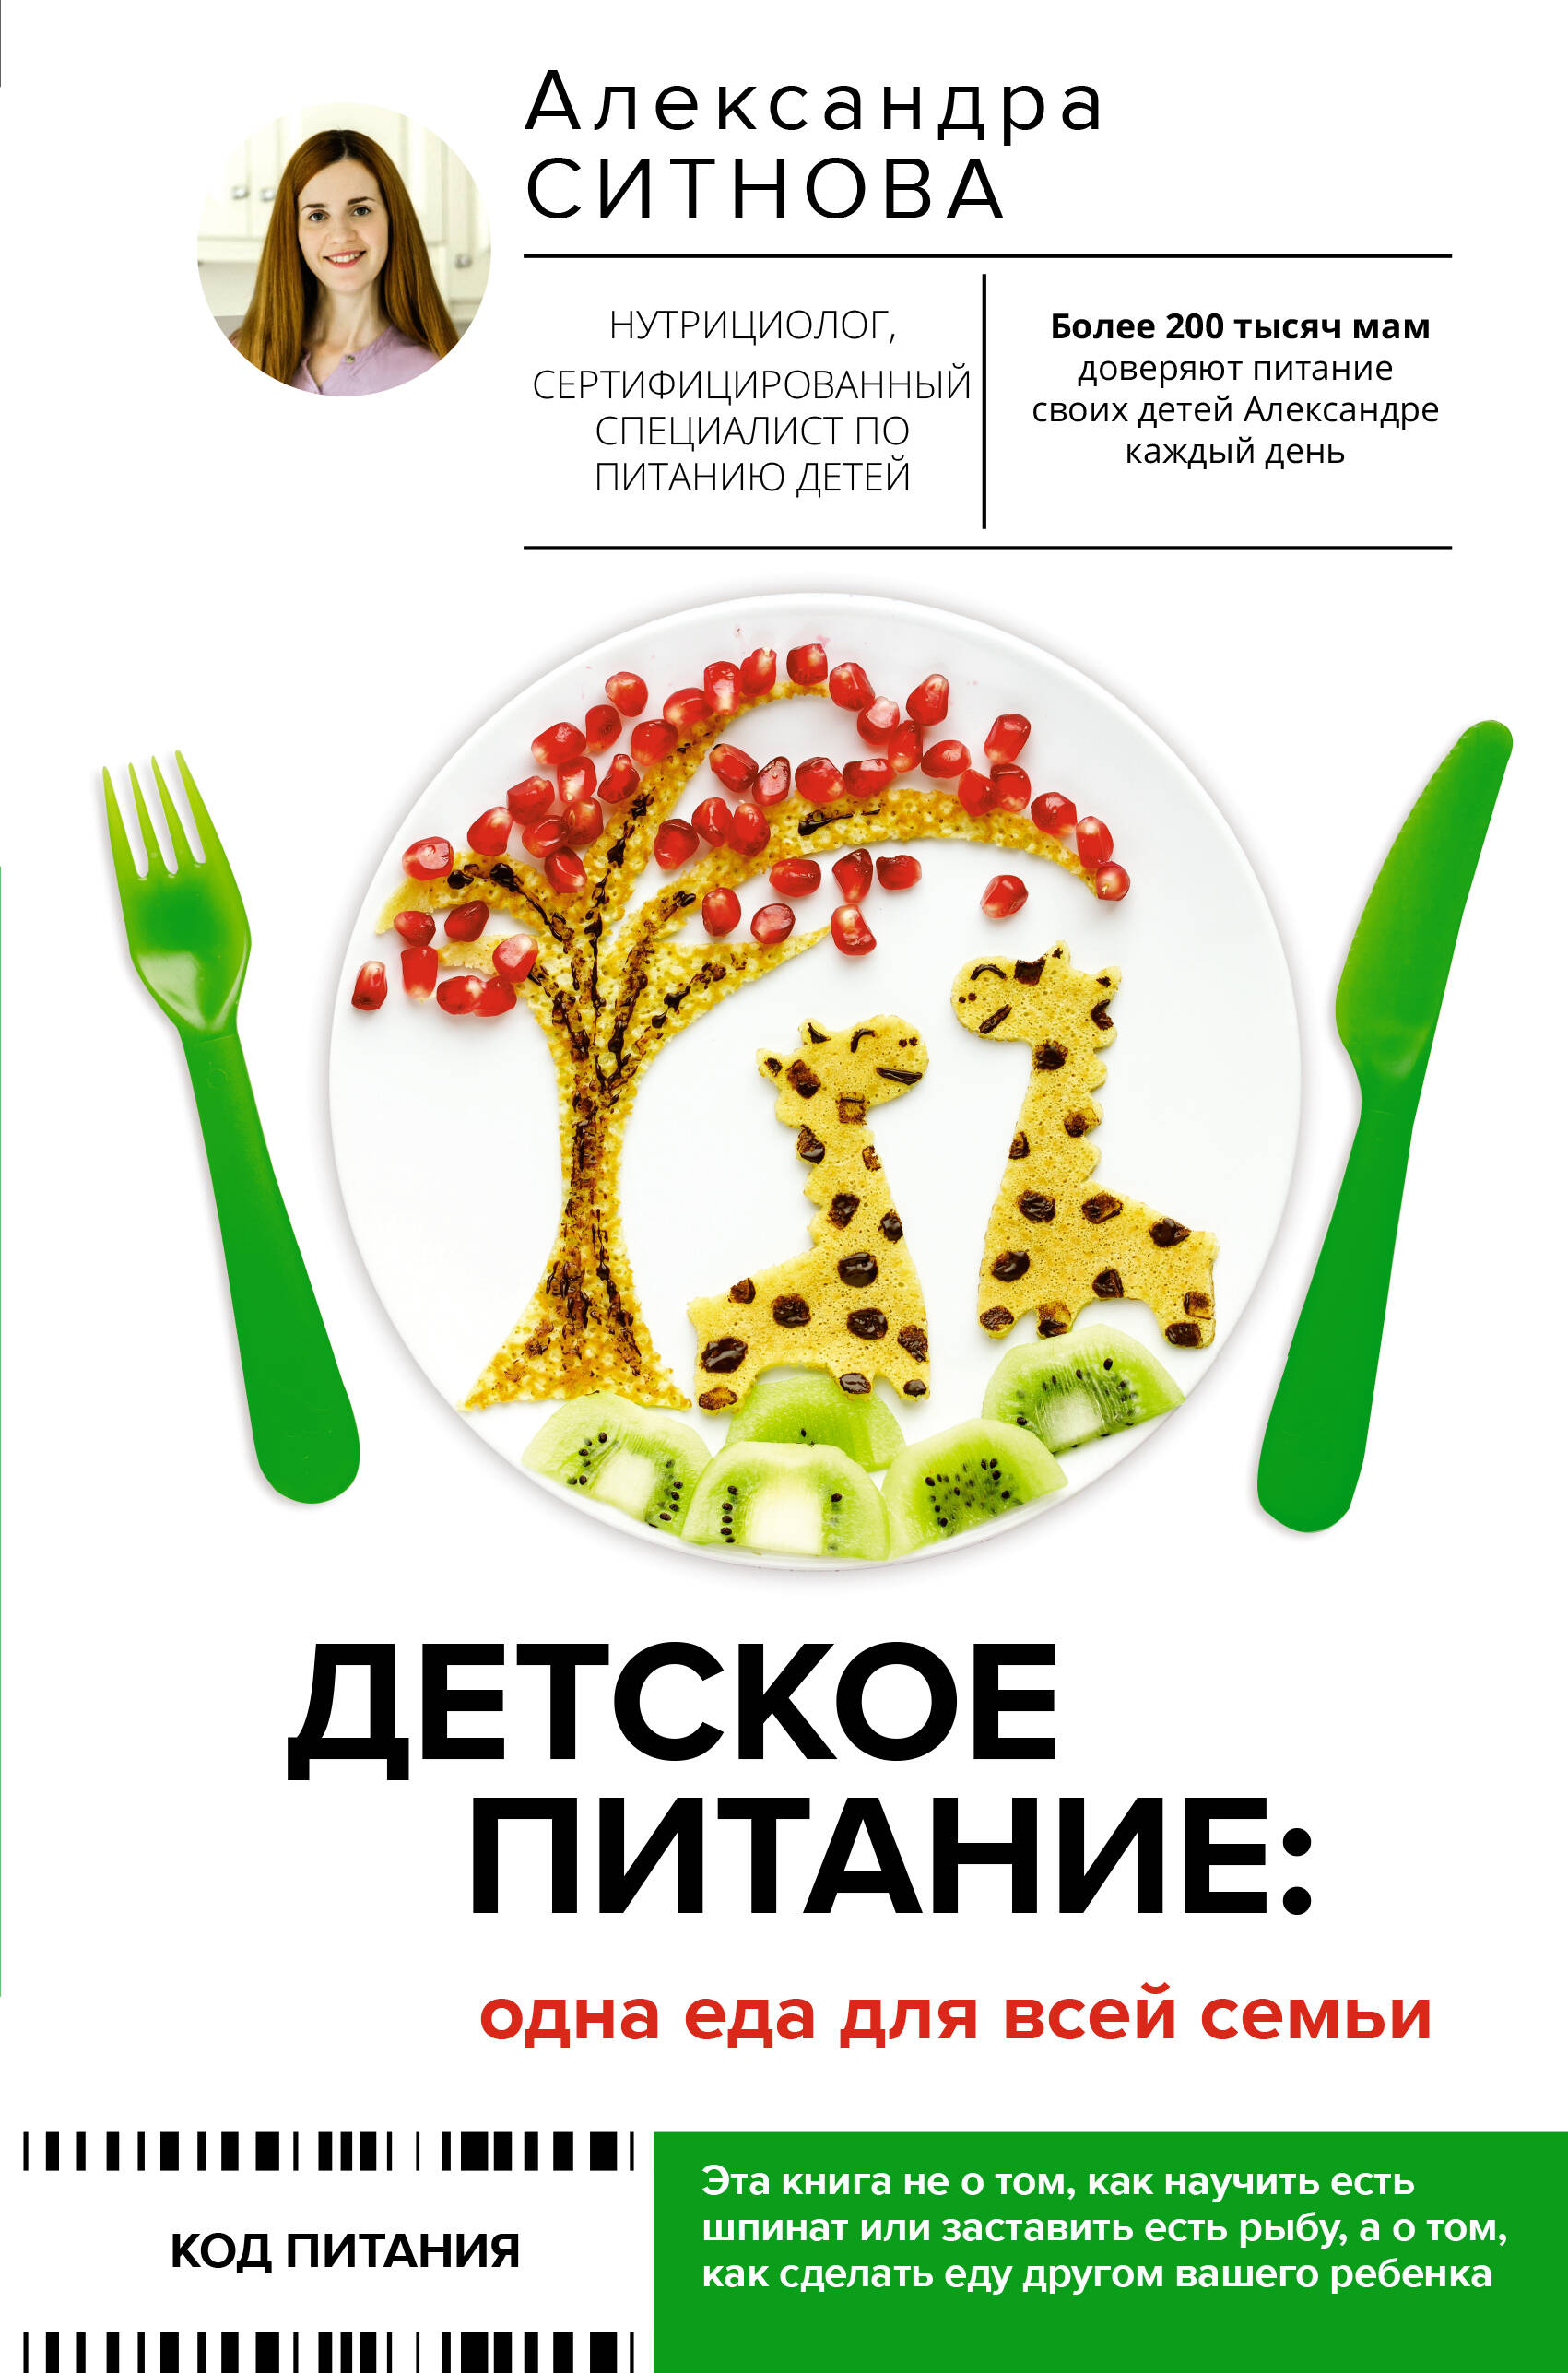 Ситнова Александра Викторовна Детское питание: одна еда для всей семьи